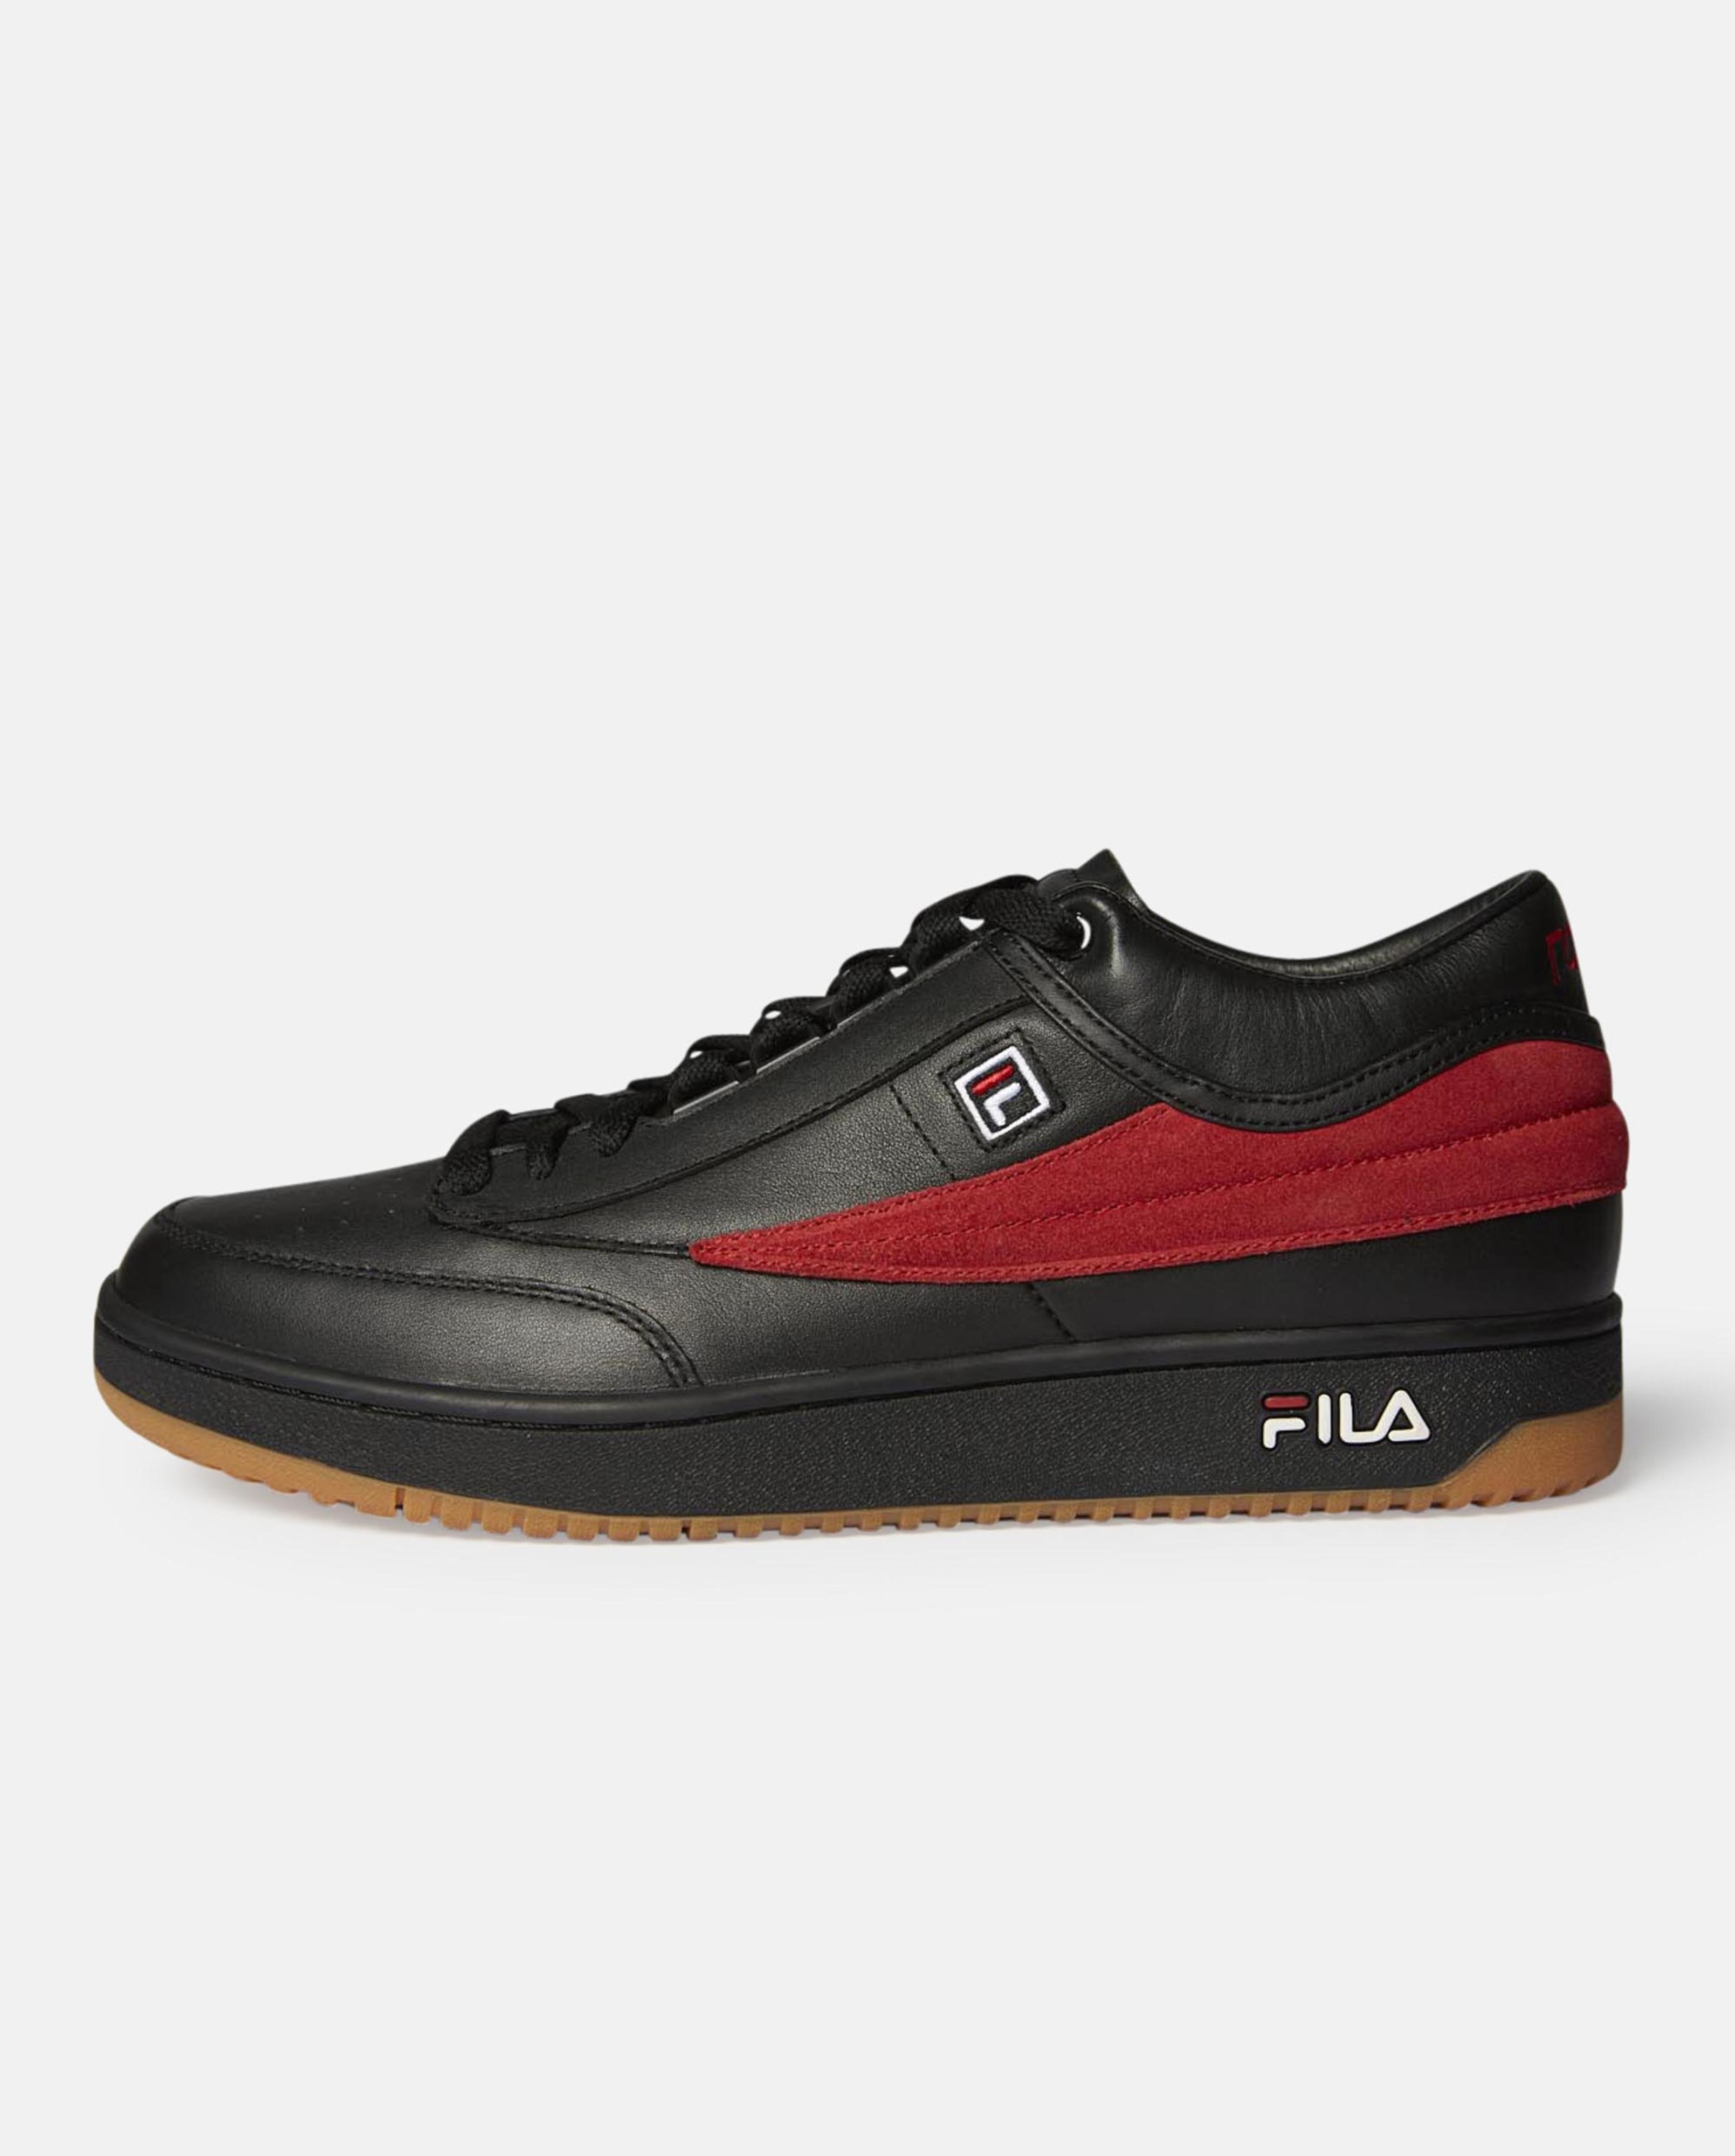 Gosha Rubchinskiy Leather X Fila T-1 Sneakers in Black for Men - Lyst